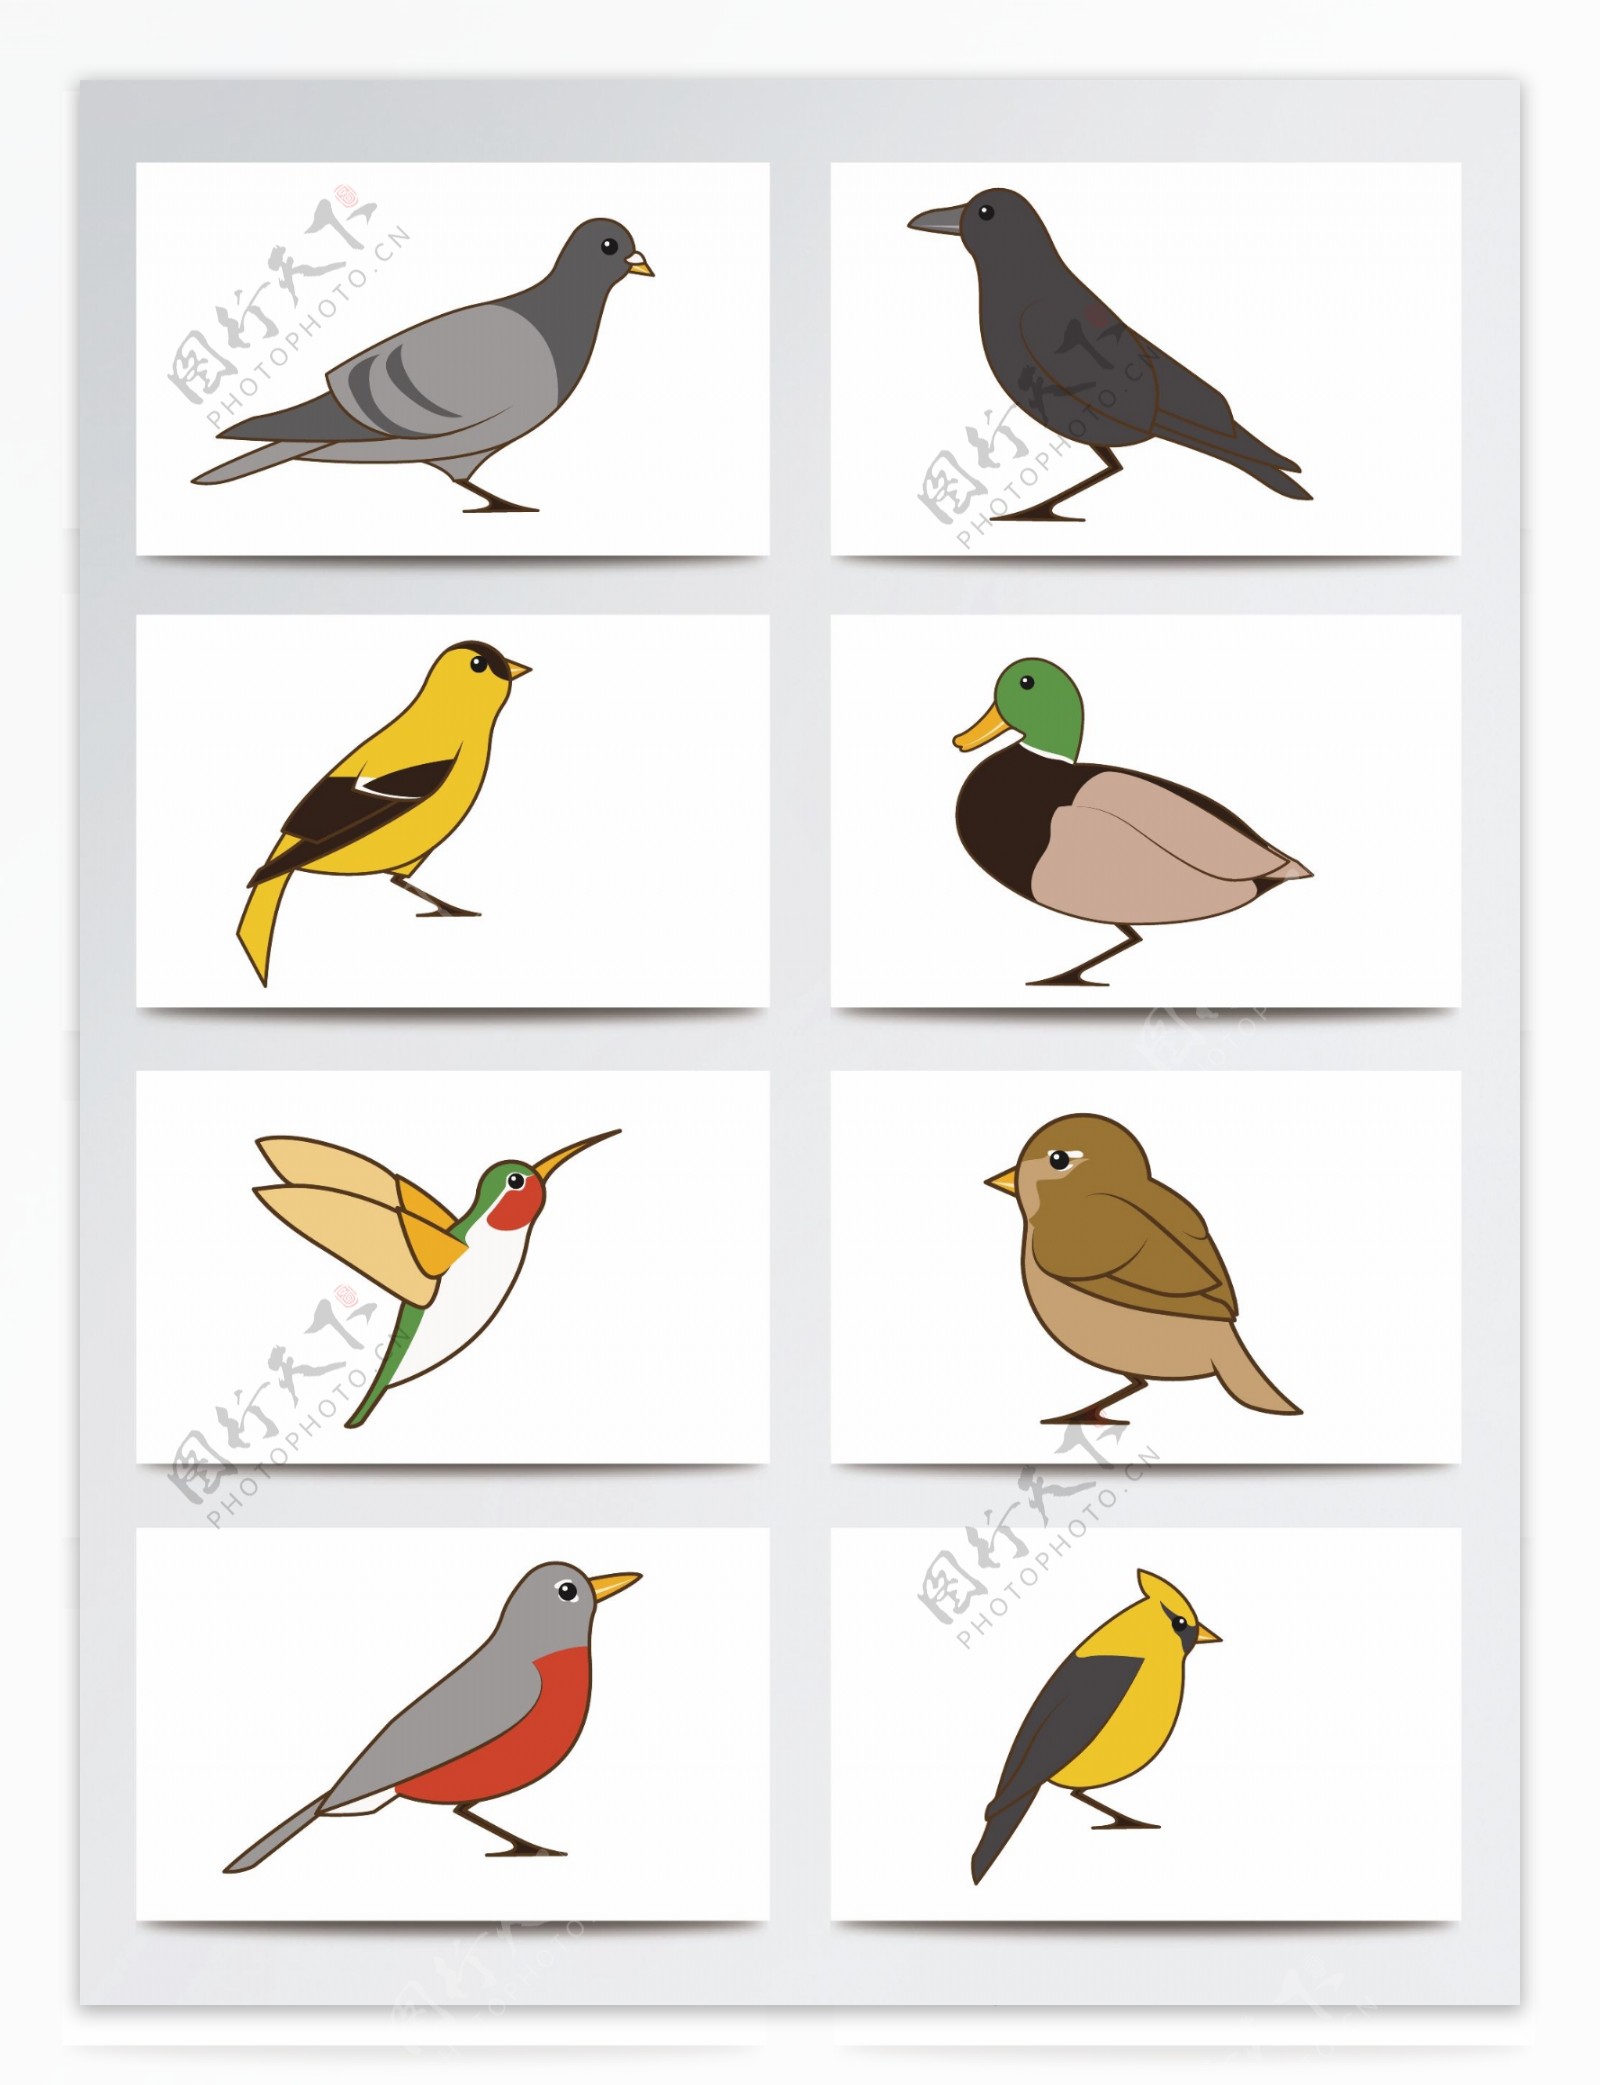 简笔绘画设计可爱鸟类